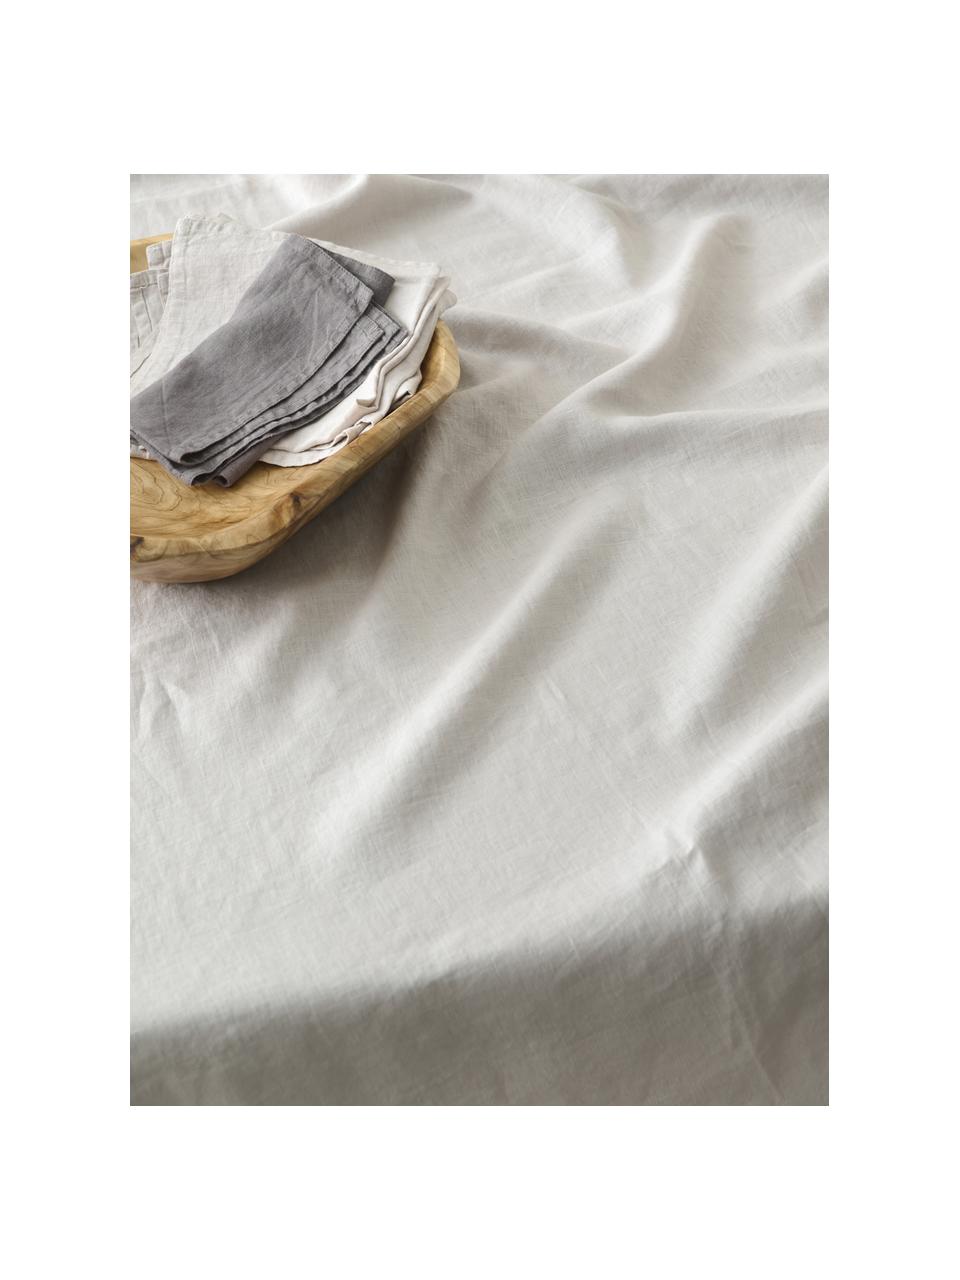 Linnen tafelkleed Duk in crèmekleur, 100% linnen, Crèmekleurig, Voor 6 - 10 personen (B 135 x L 250 cm)